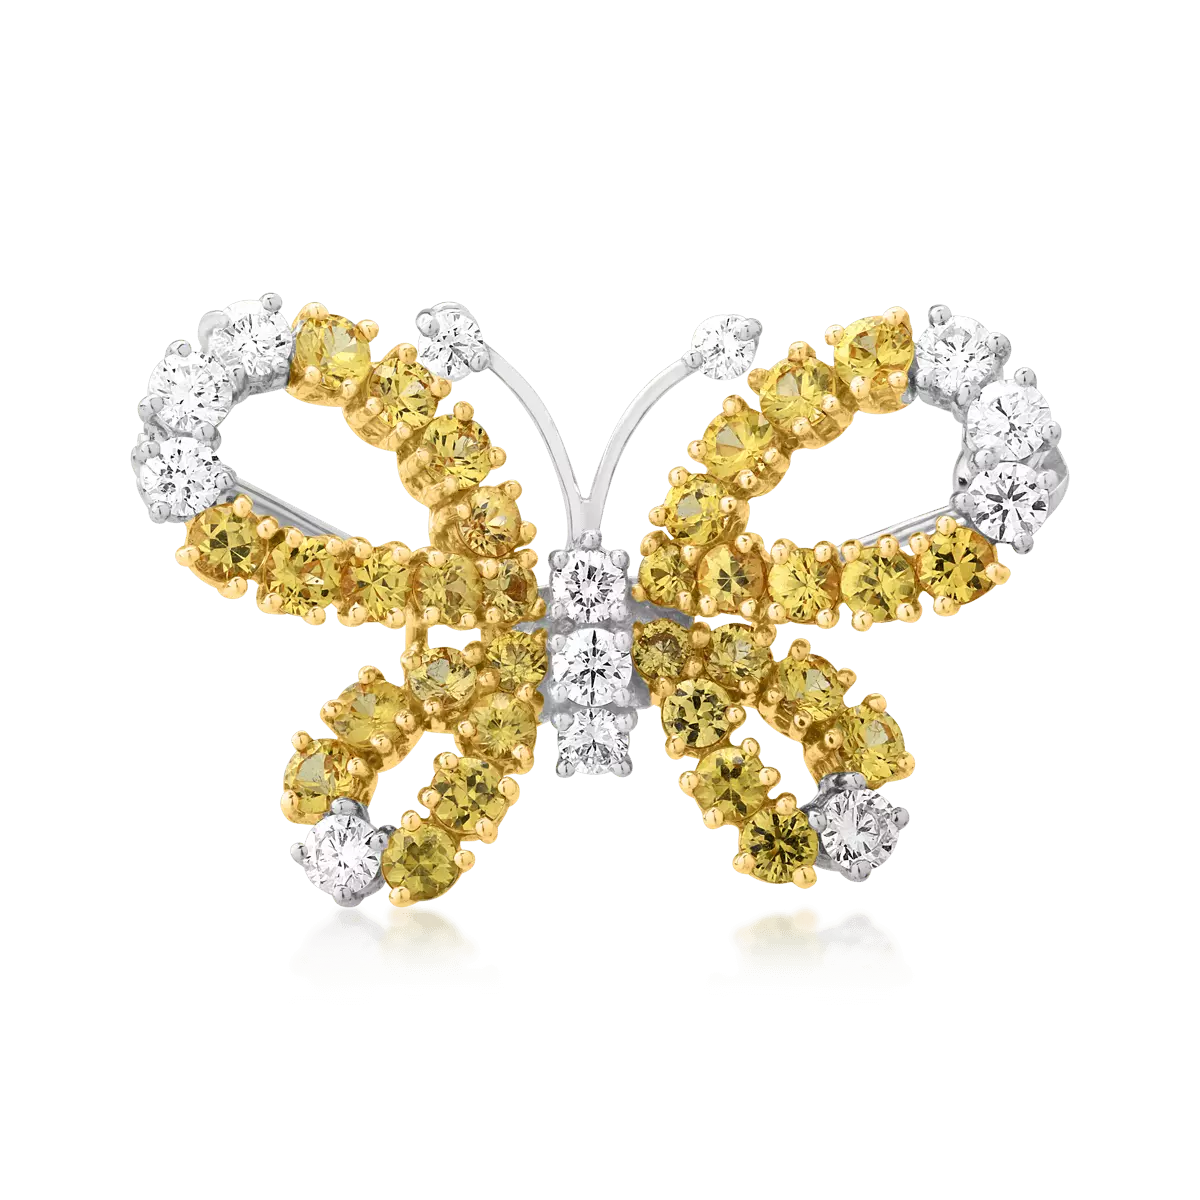 Bross Pillangó 18K-os fehér-sárga aranyból 1,92ct sárga zafírral és 0,68ct gyémánttal